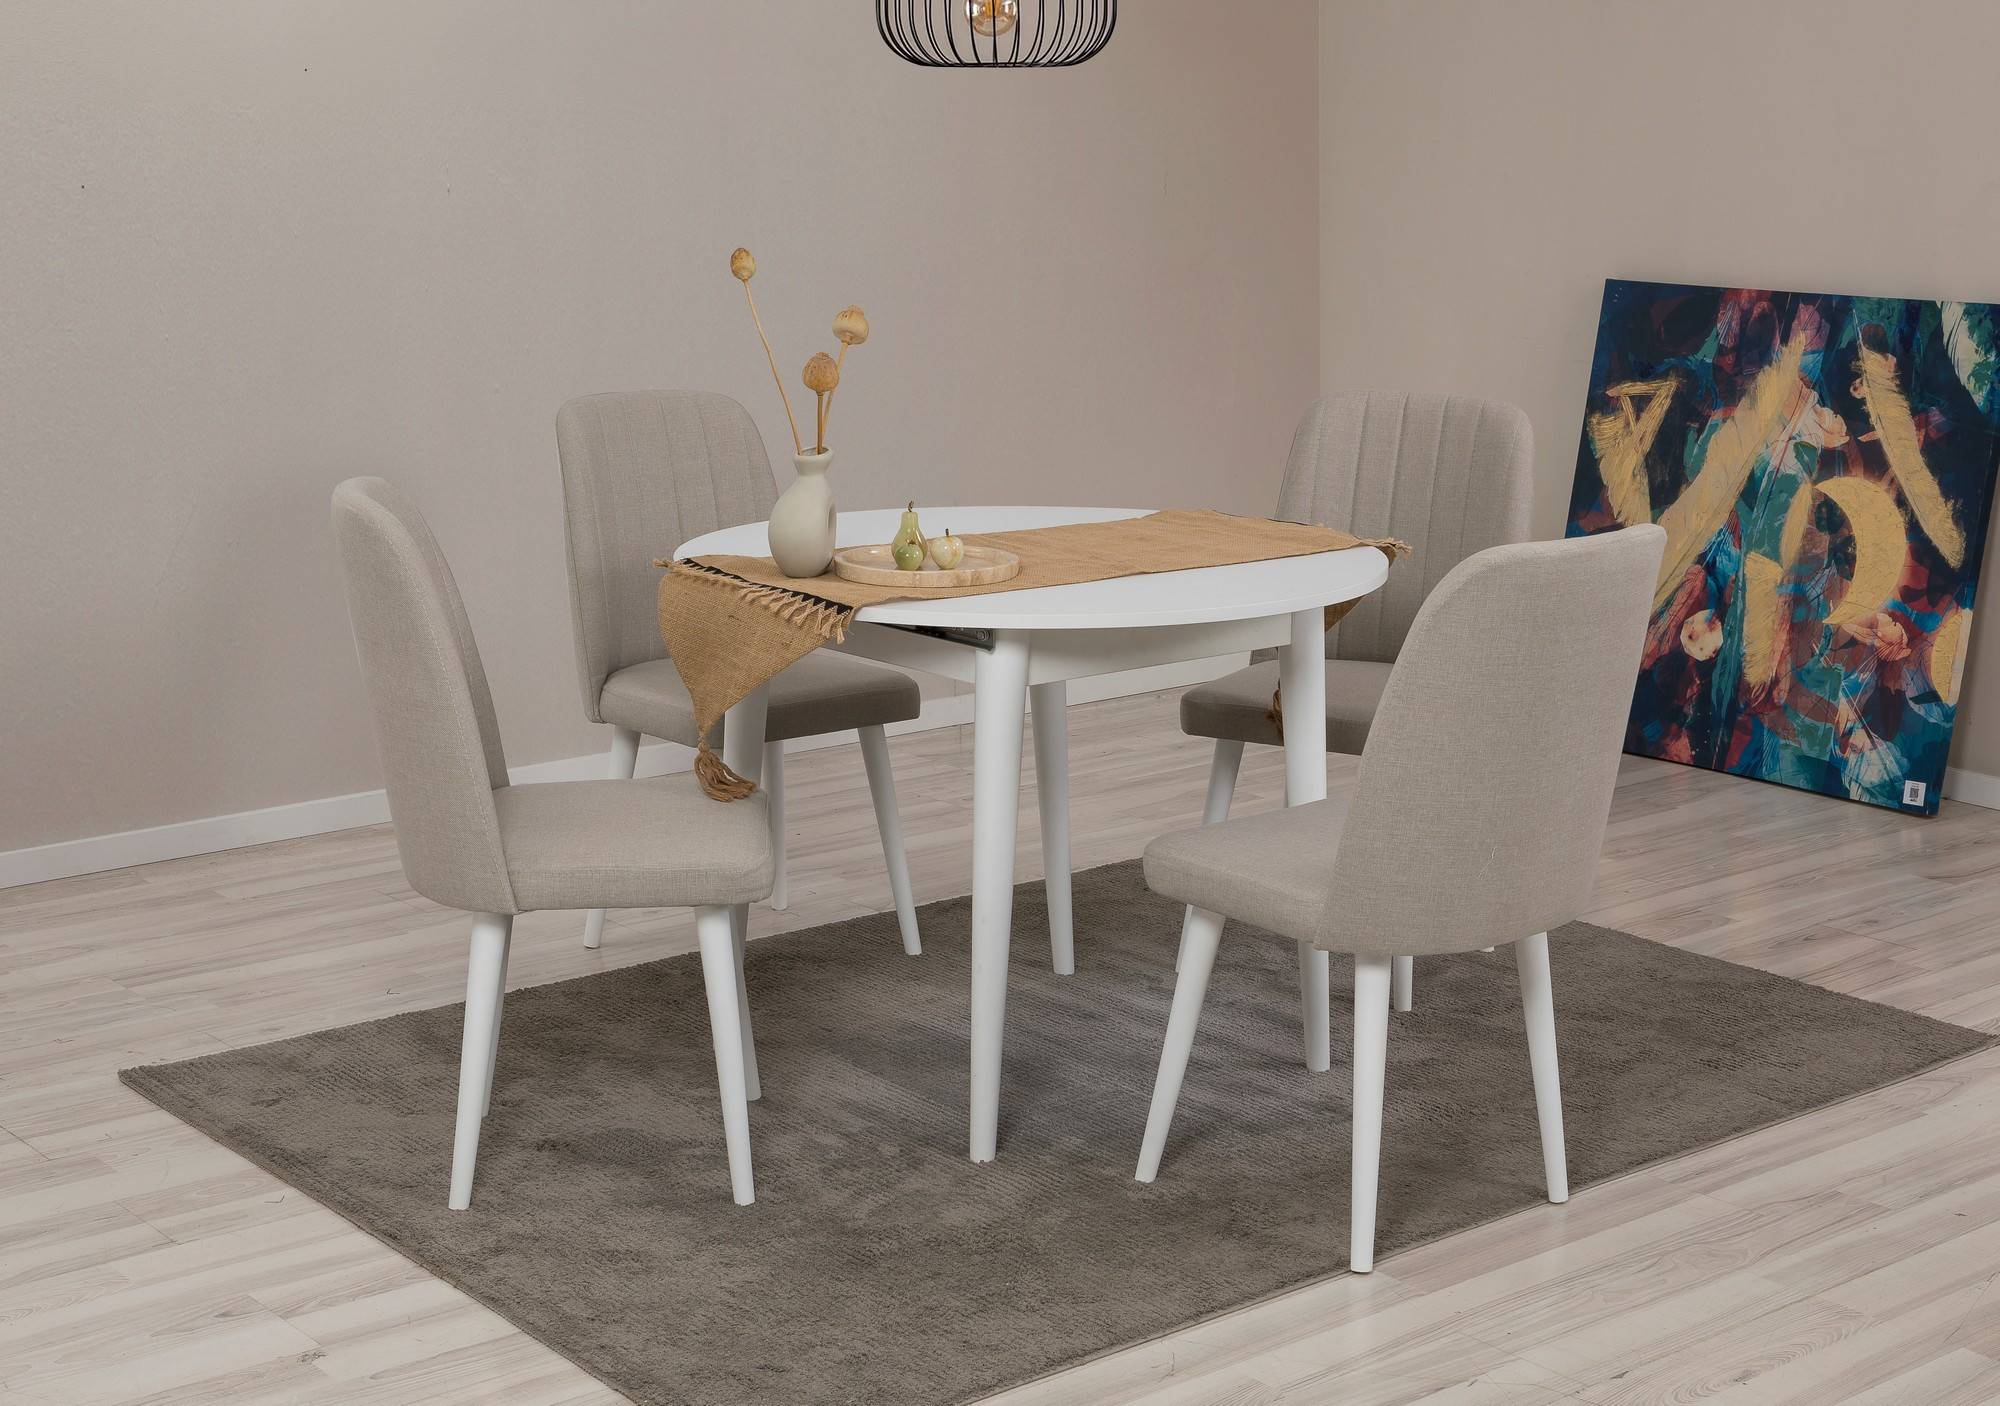 Juego de mesa redonda extensible y 4 sillas Malva de madera blanca y tapiz de color gris pardo.